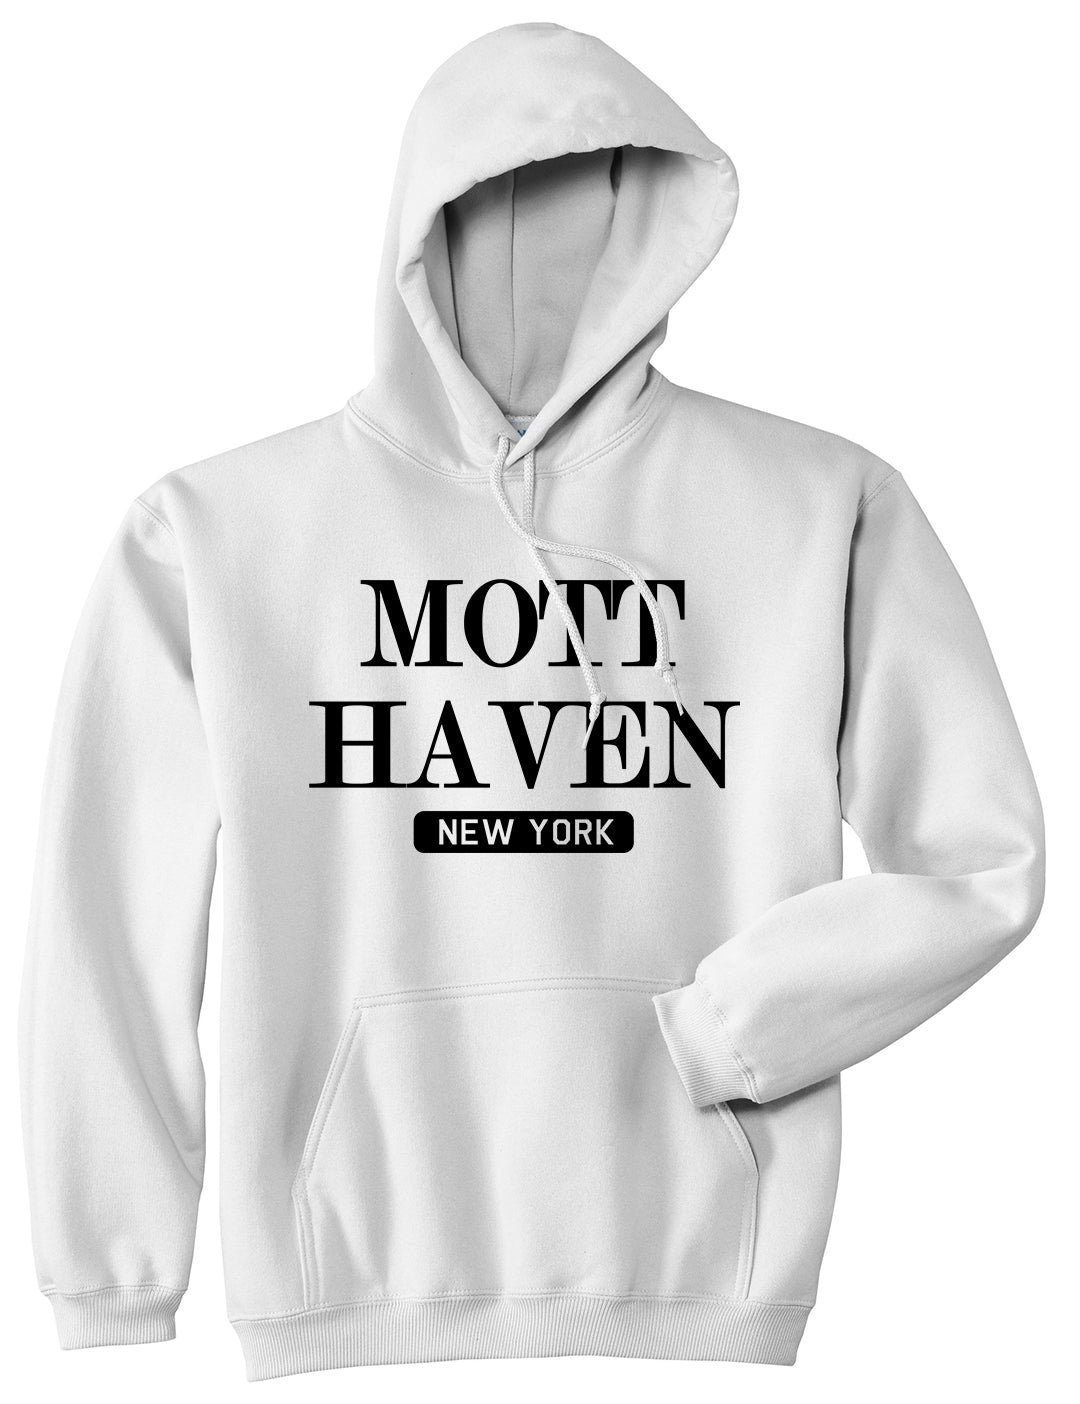 Mott Haven New York Mens Pullover Hoodie White